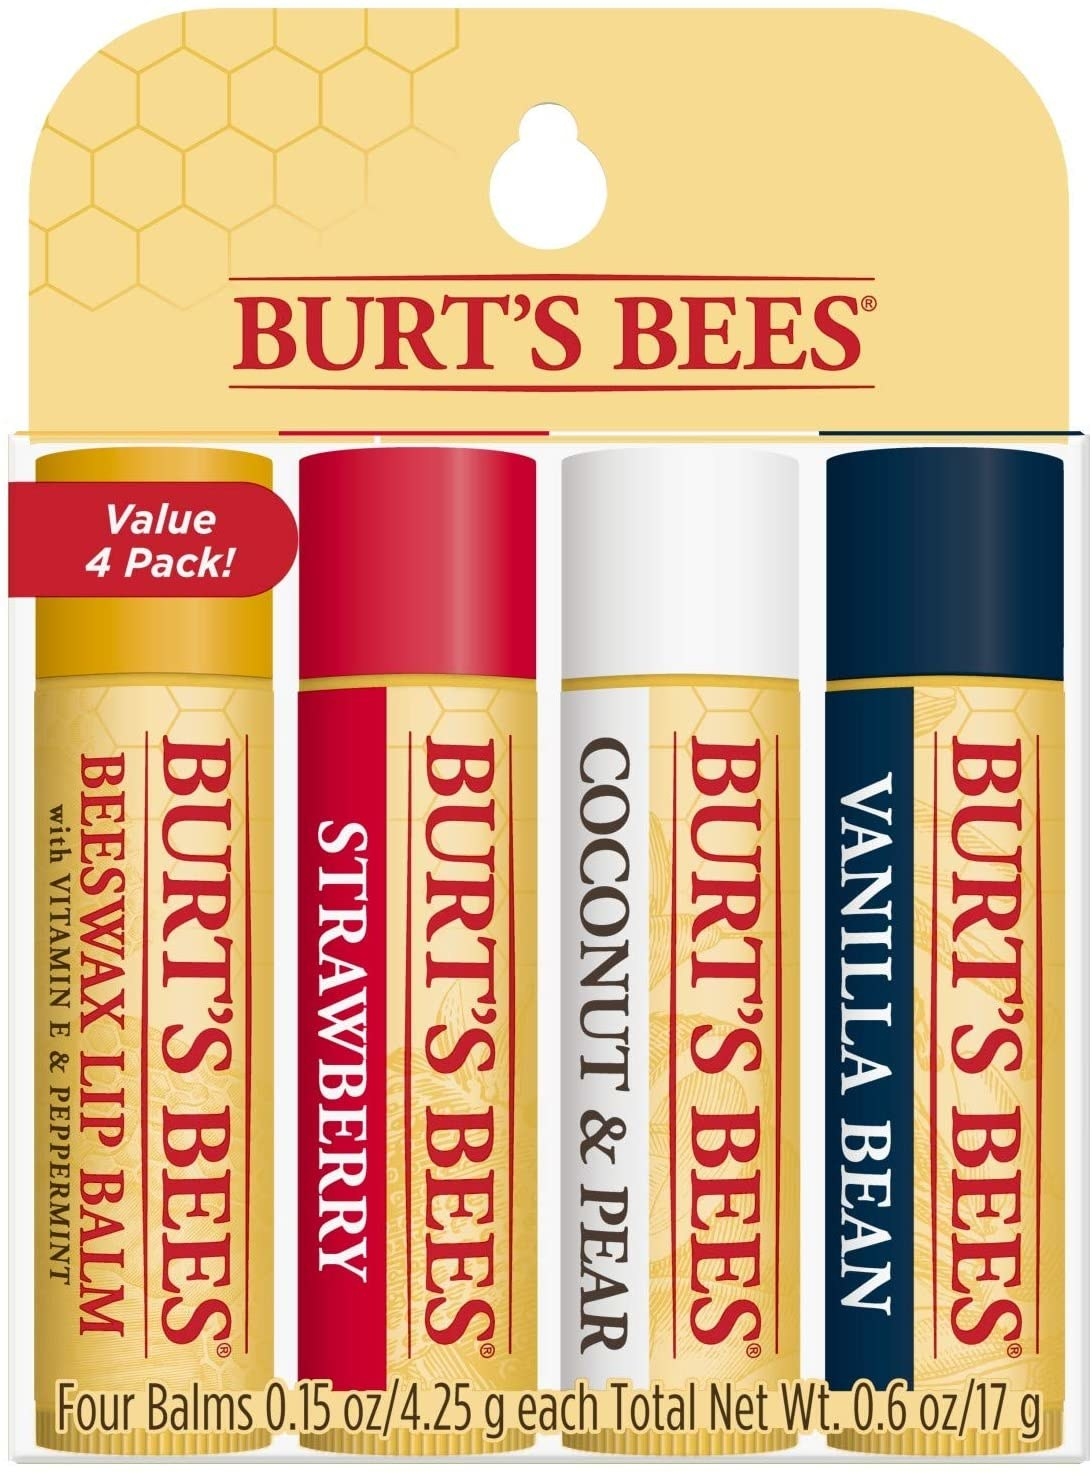 cuatro bálsamos labiales hidratantes en cera de abejas, fresa, coco y pera, y vainilla